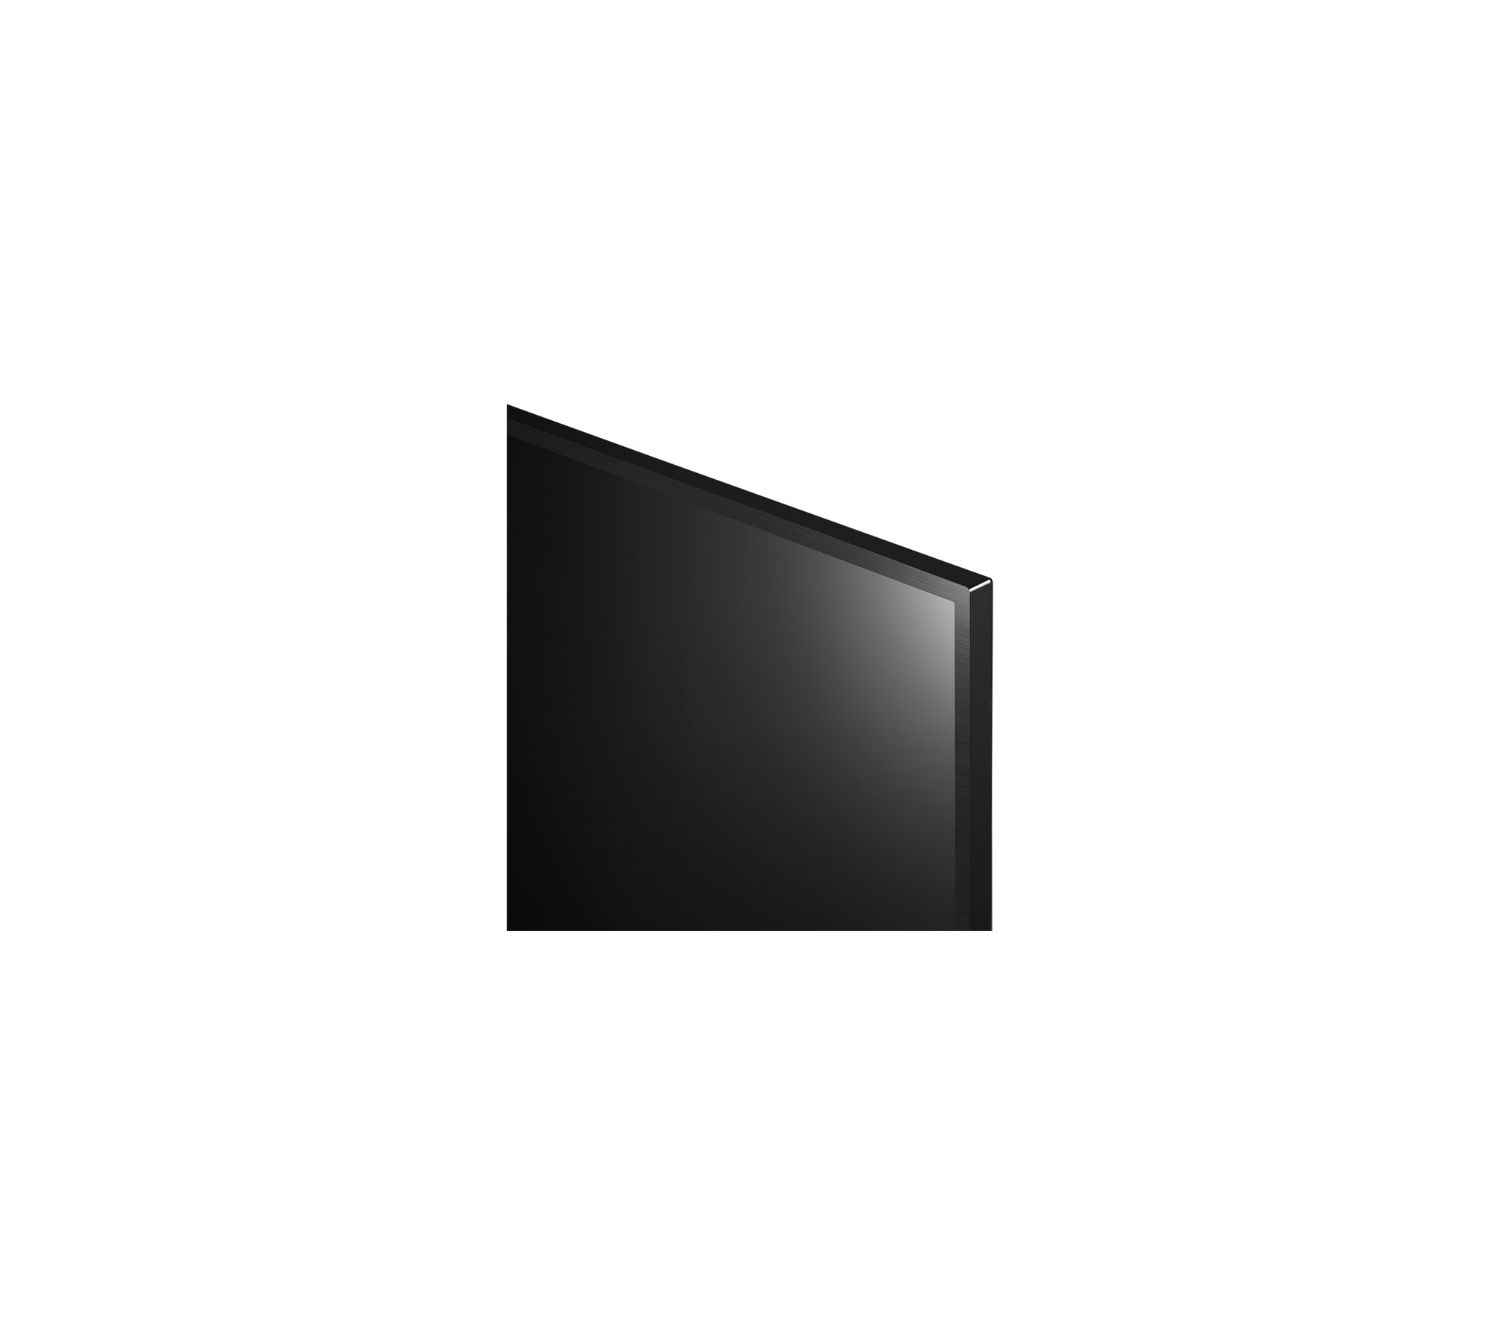 43US662H9ZC - Televisor LG Modo Hotel Interactiva, funciones Smart, resolucin UHD (3840x2160) Color Negro Ceramico. NO viene incluida la peana.